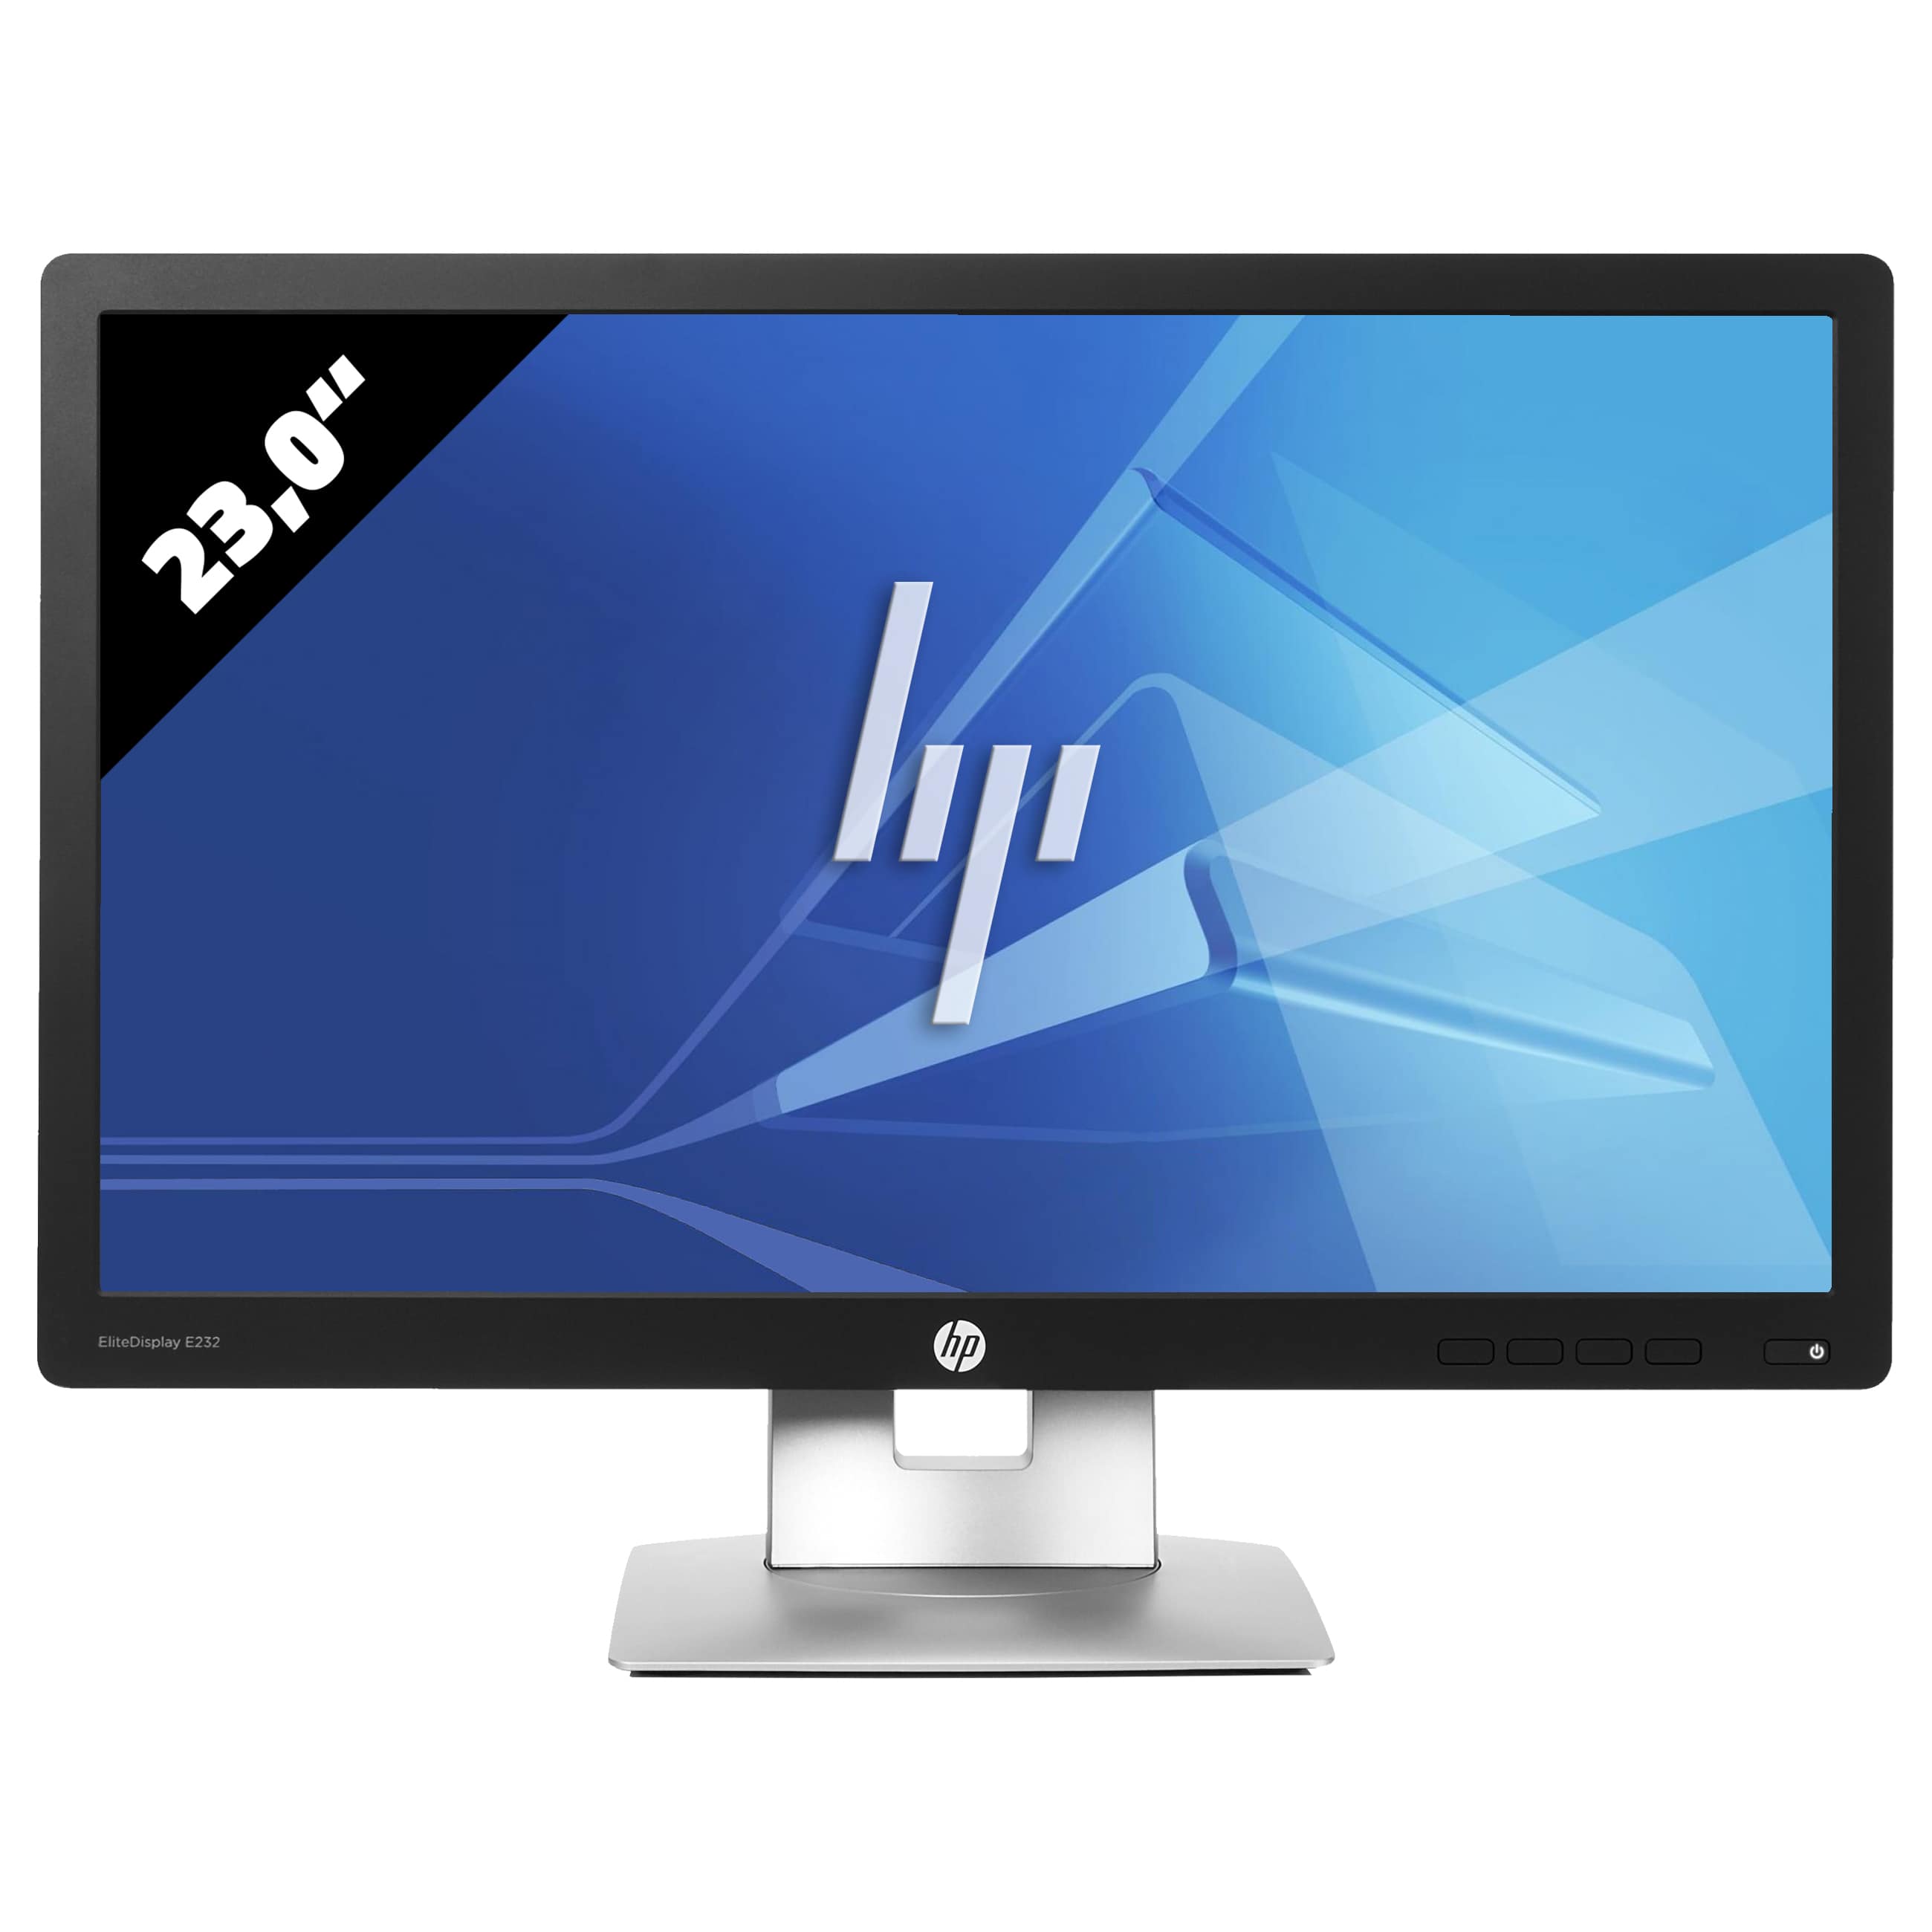 Obrázok monitoru HP EliteDesk E232 - 23,0 Palcov - Čierny